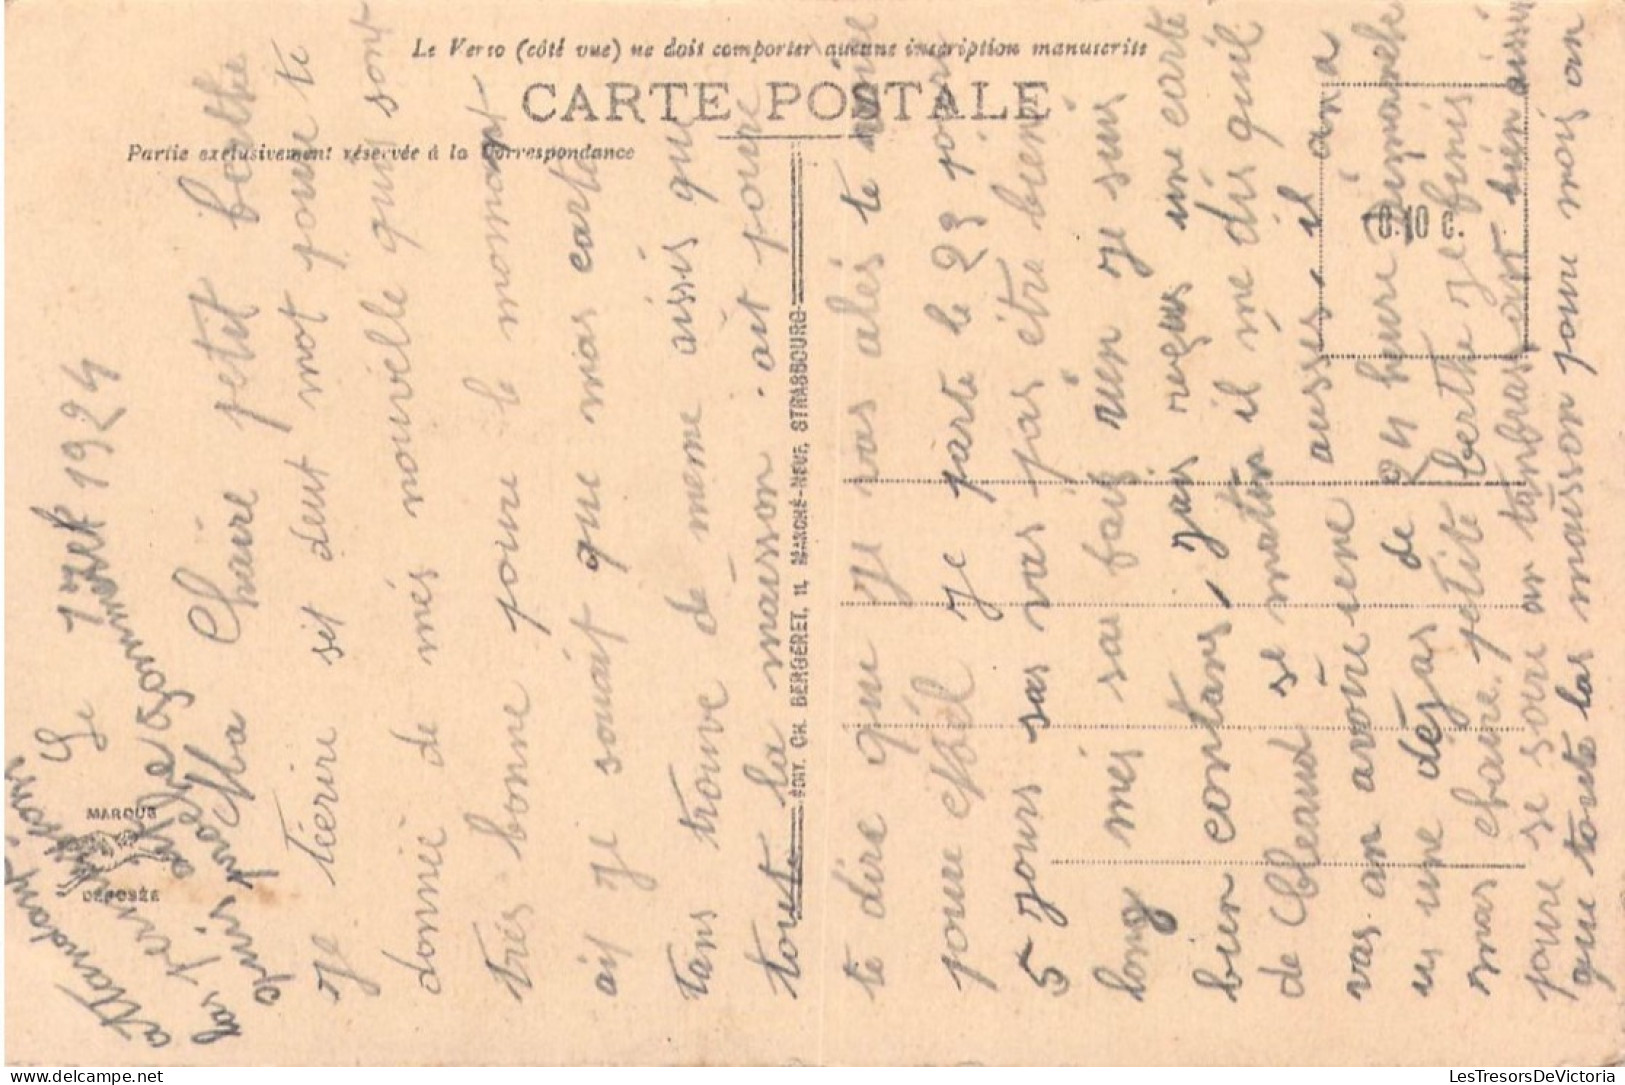 FRANCE - 68 - MULHOUSE - Hôtel Des Postes - Carte Postale Ancienne - Mulhouse